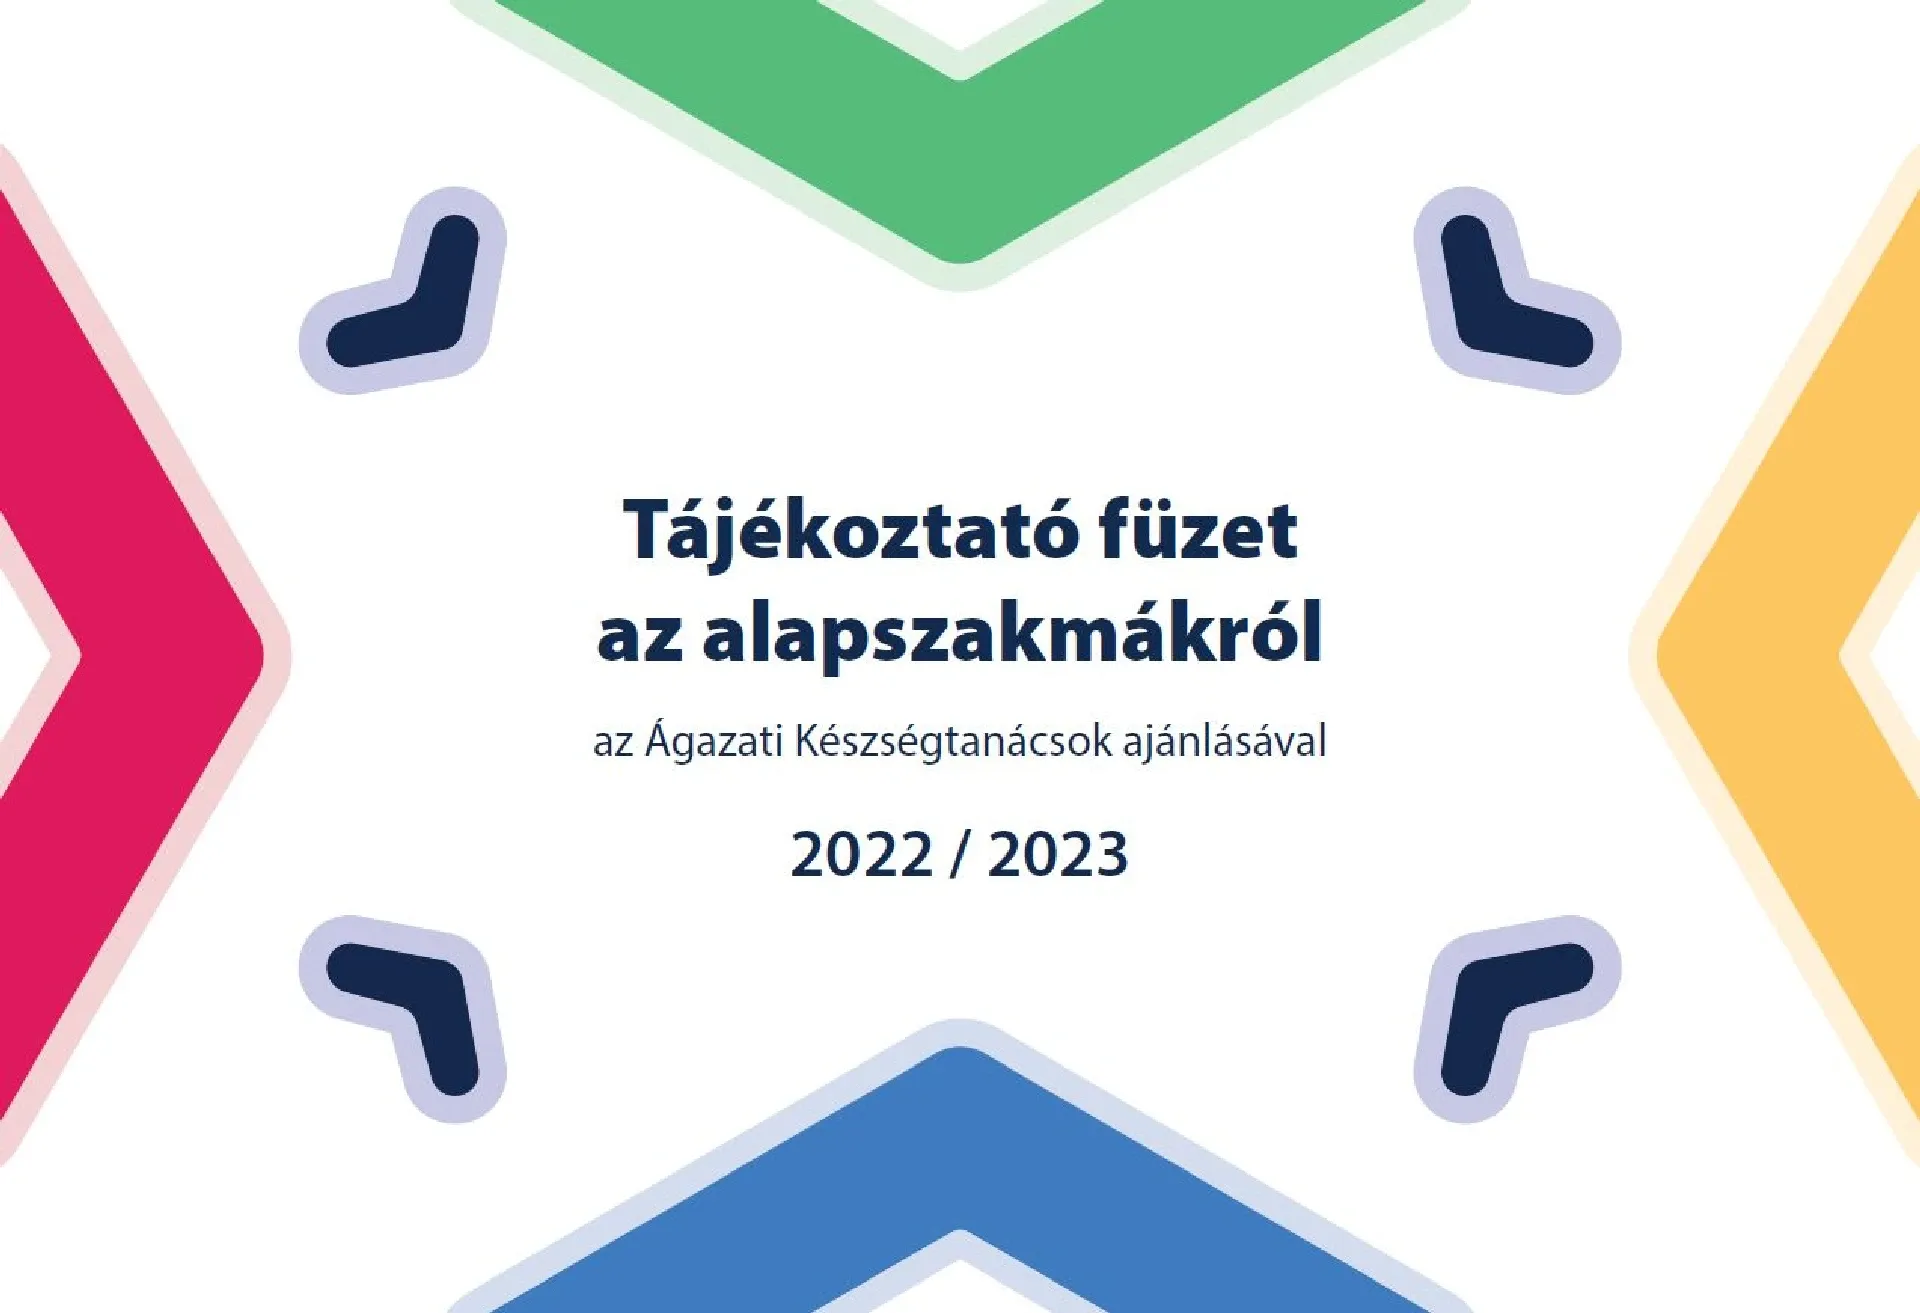 Megjelent a 2022/2023-as tanévre vonatkozó új szakmafüzet